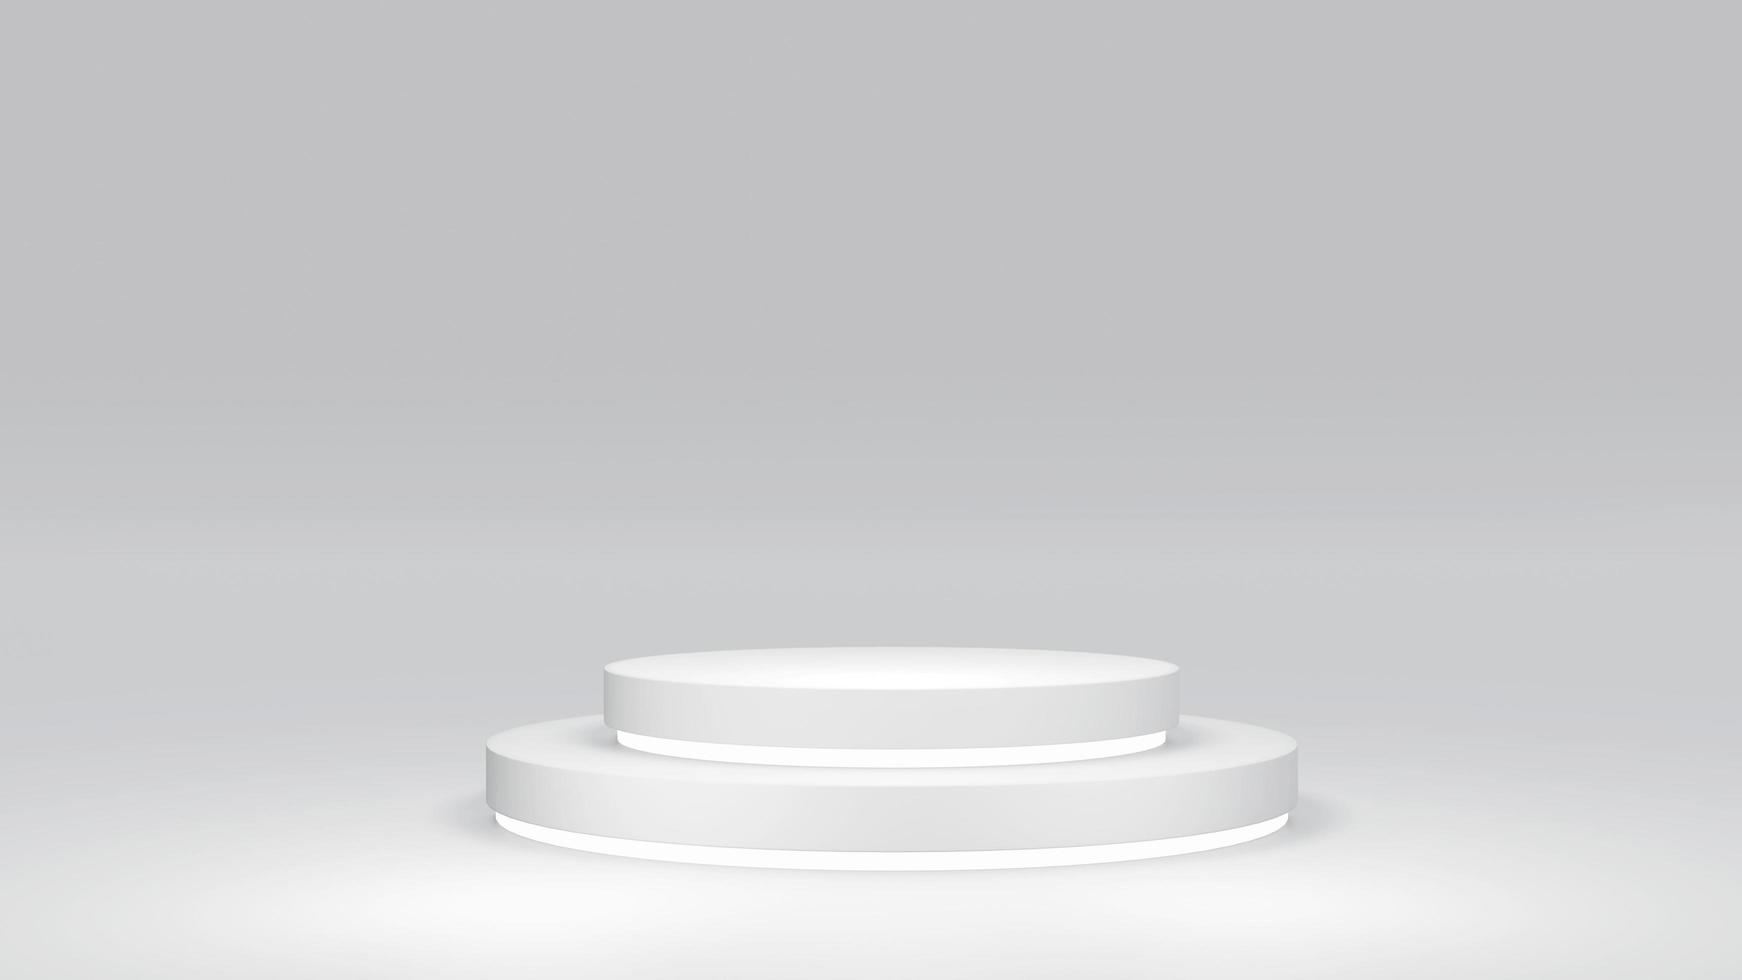 Concept de rendu 3d du thème blanc des éléments de géométrie de composition de podiums d'affichage de produits vierges pour la conception de modèles commerciaux. rendu 3D. photo